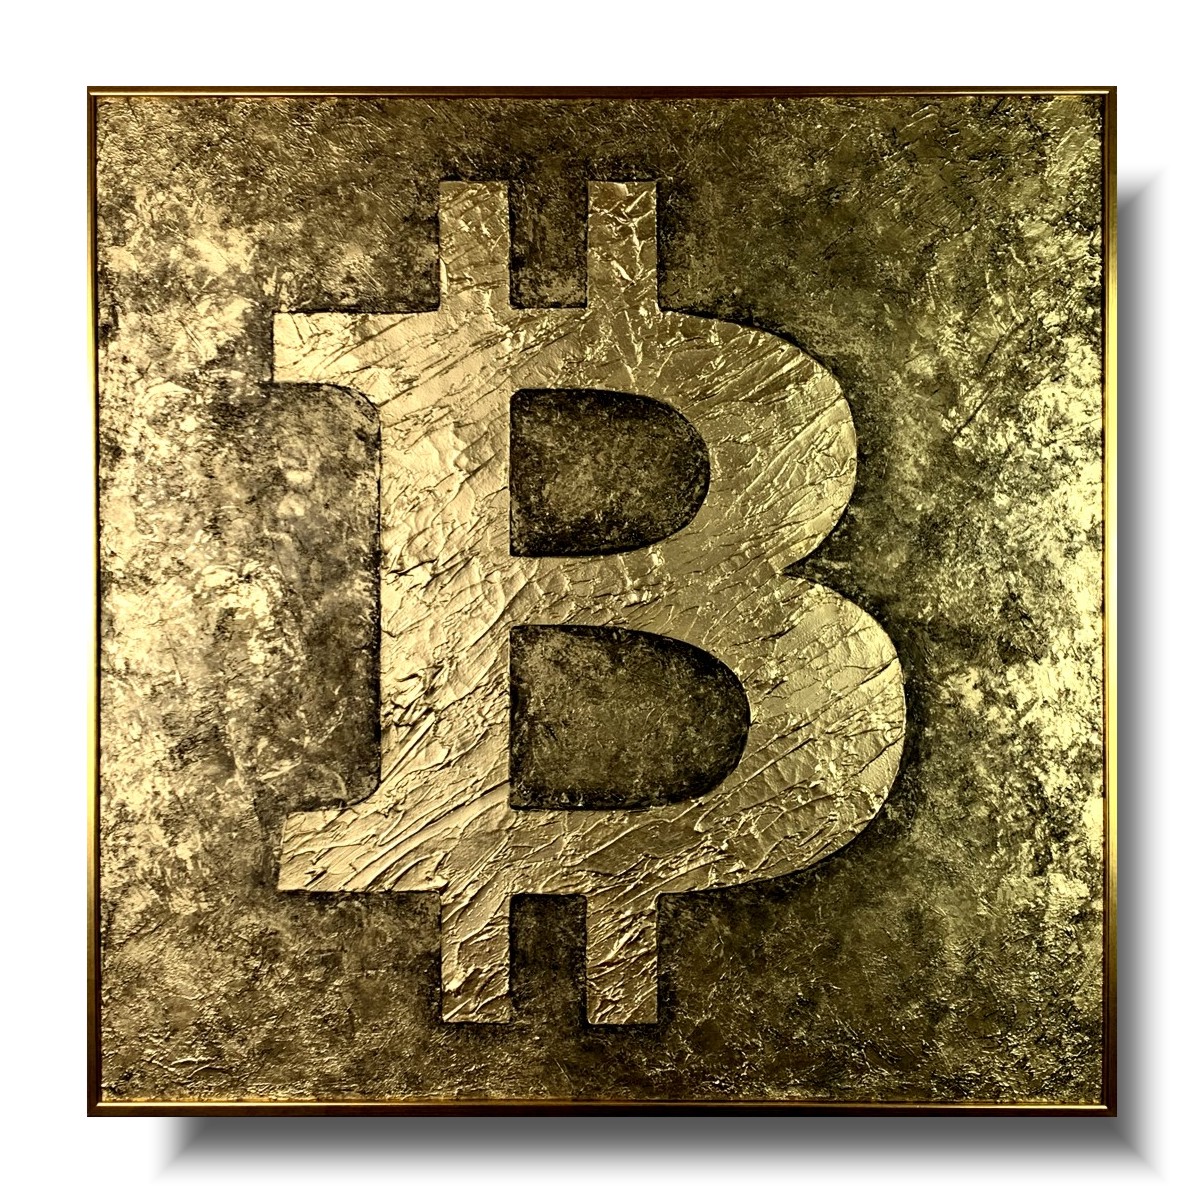 Obraz w ramie gold bitcoin abstrakcja, obraz złoty, obraz bitcoin, obraz w złotej ramie, obraz kryptowaluty, obrazy do salonu sprzedaży, bitcoin obraz